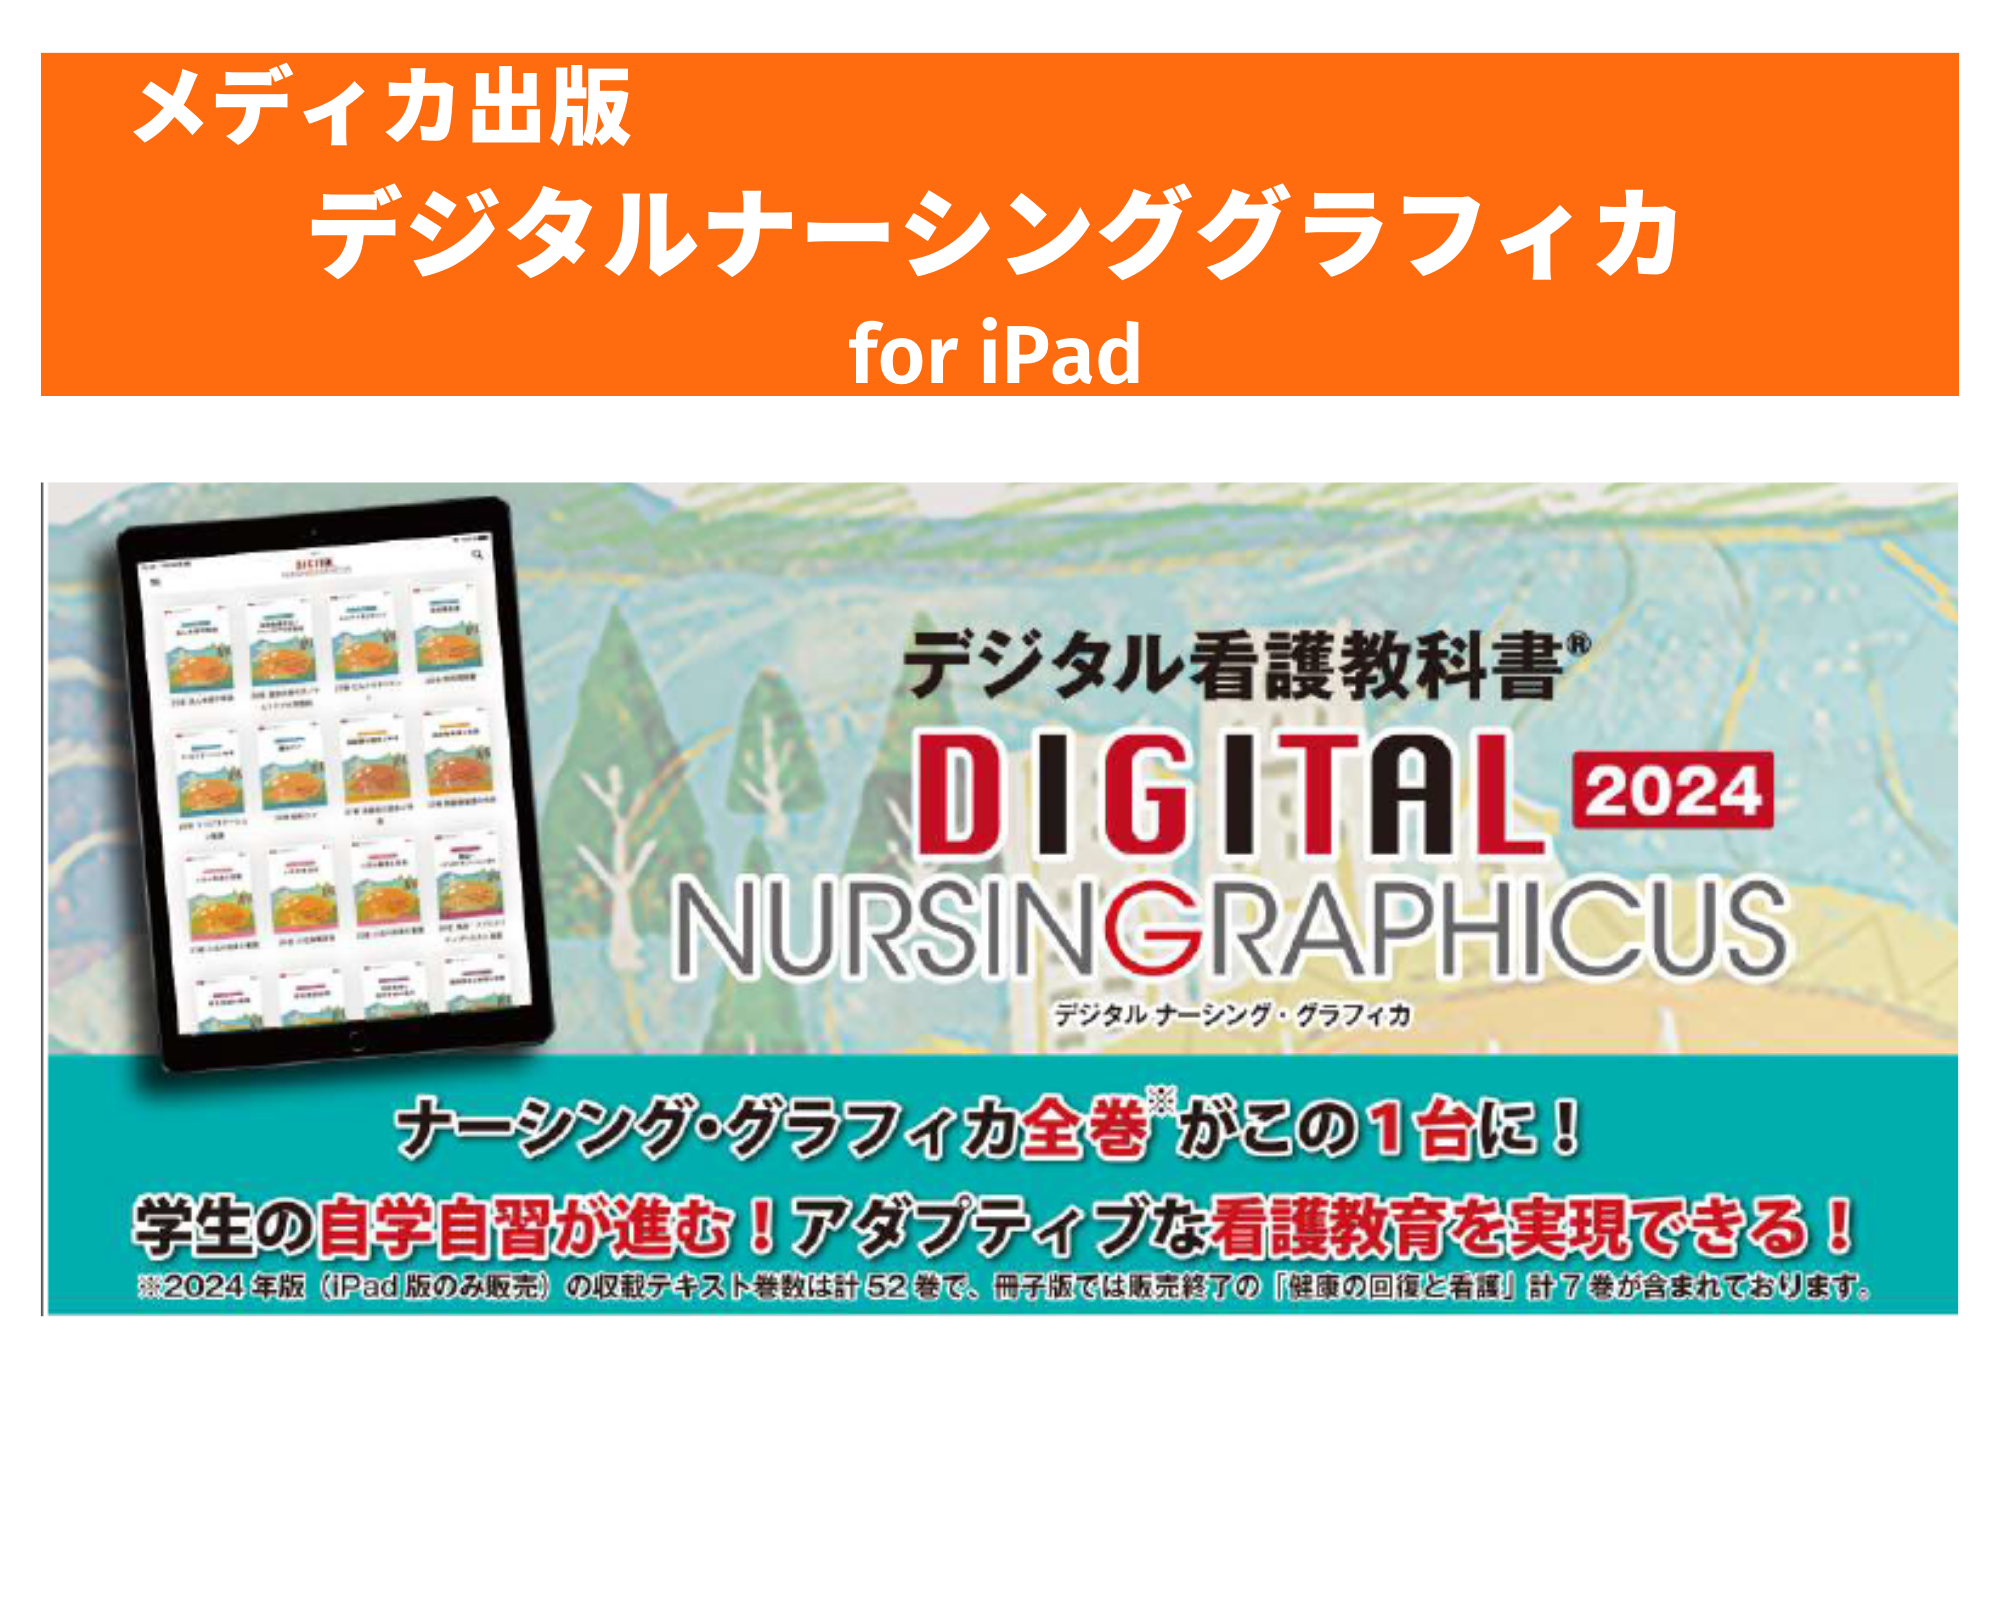 iPad用 デジタルナーシンググラフィカ デジタル 看護 教科書 - 参考書